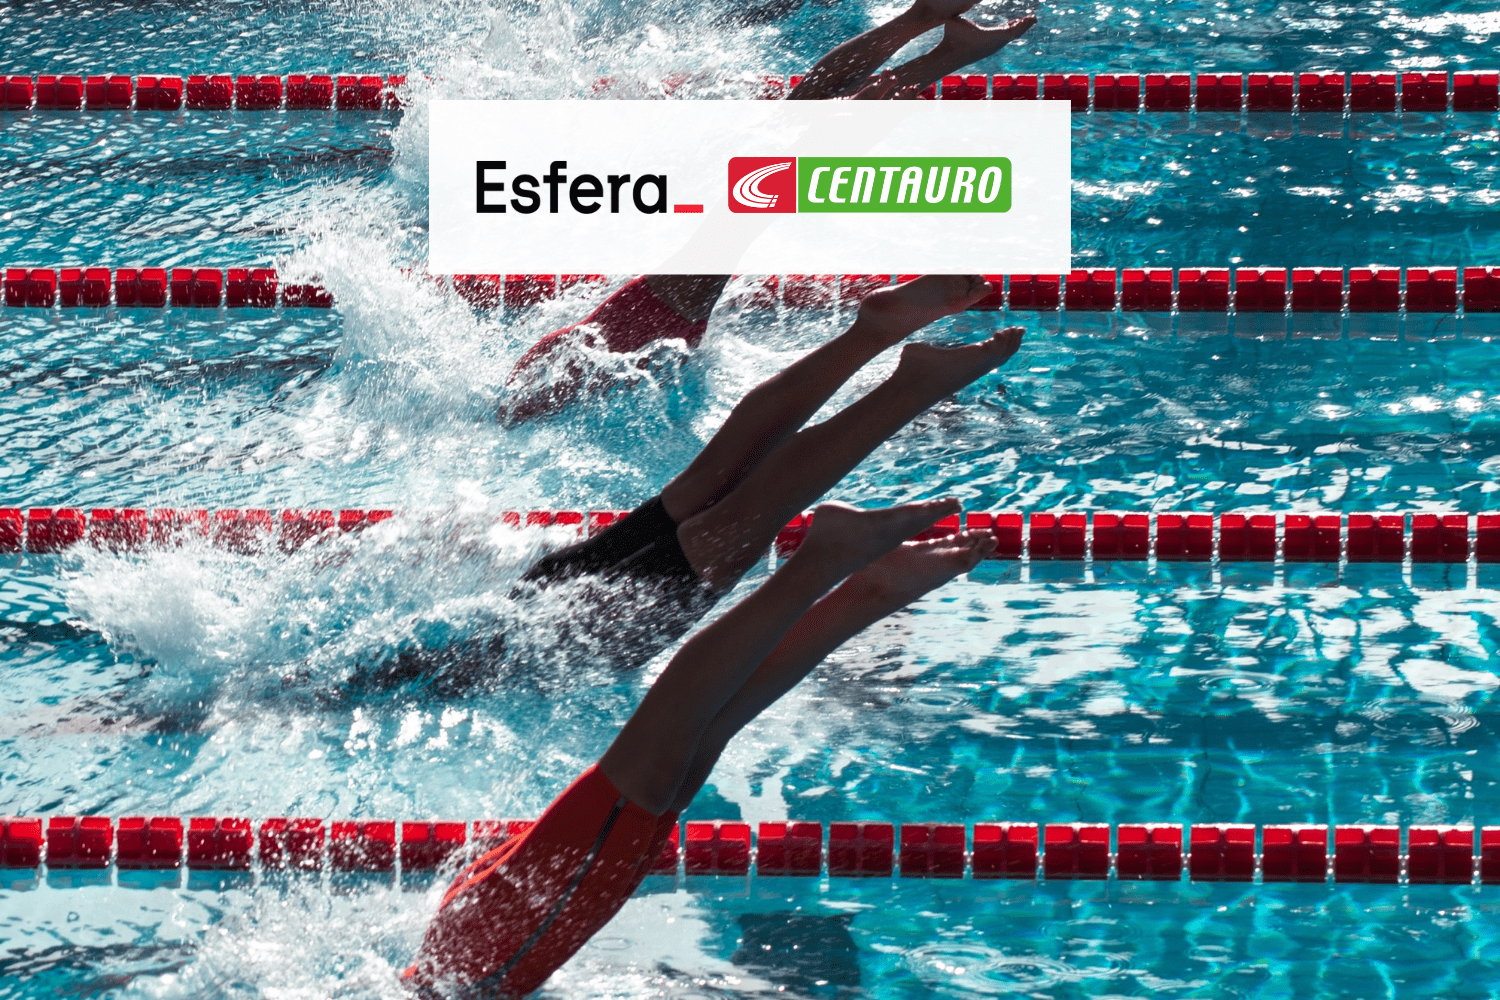 Nadadores saltando na piscina com logo Esfera e Centauro 6 pontos Esfera